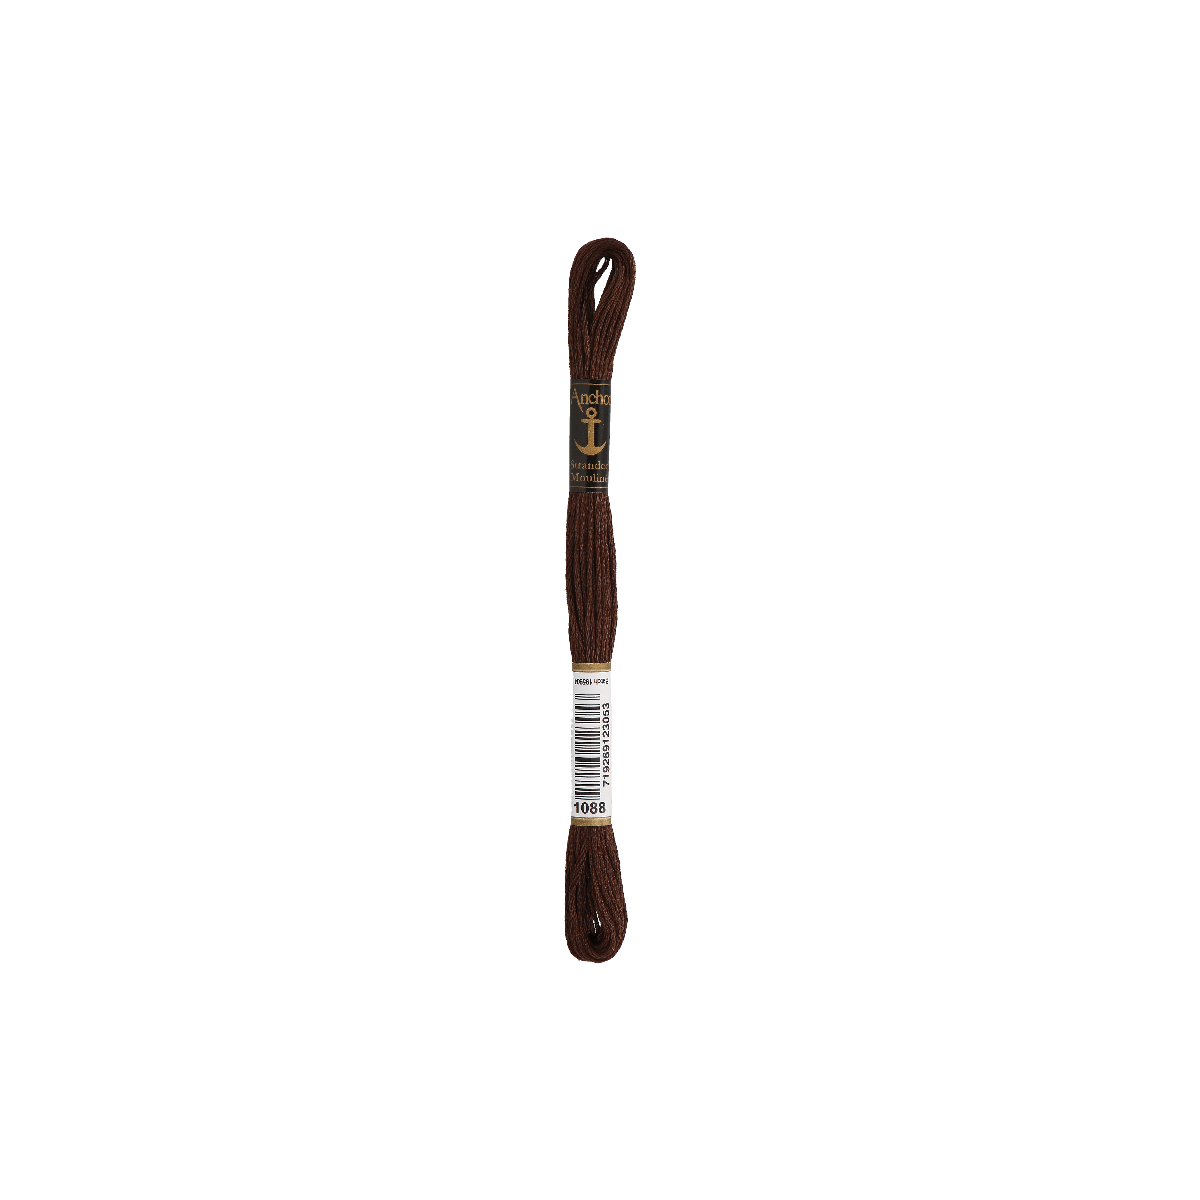 Anchor мулине 8m, тёмно-коричневый, Хлопок,  цвет 1088,...